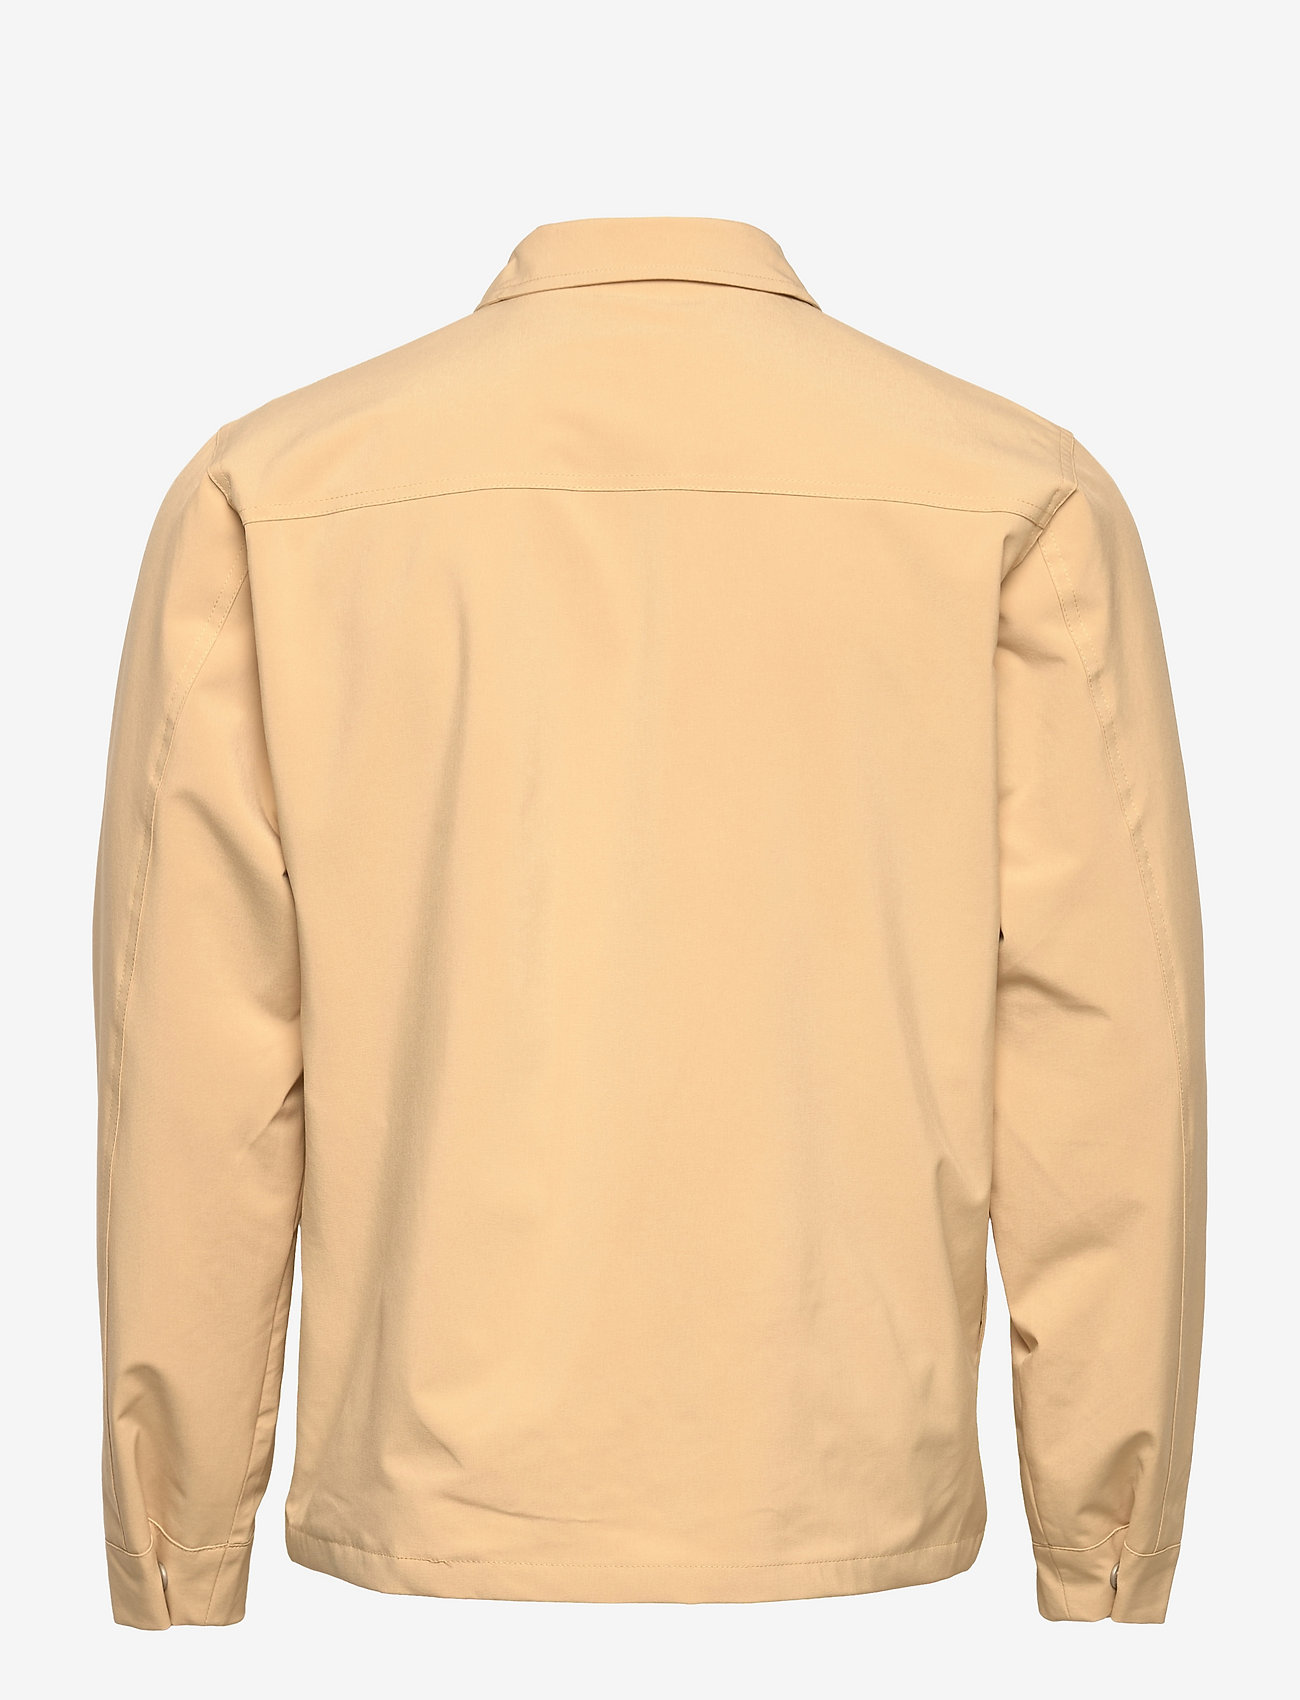 Revolution - Outerwear - wiosenne kurtki - khaki - 1